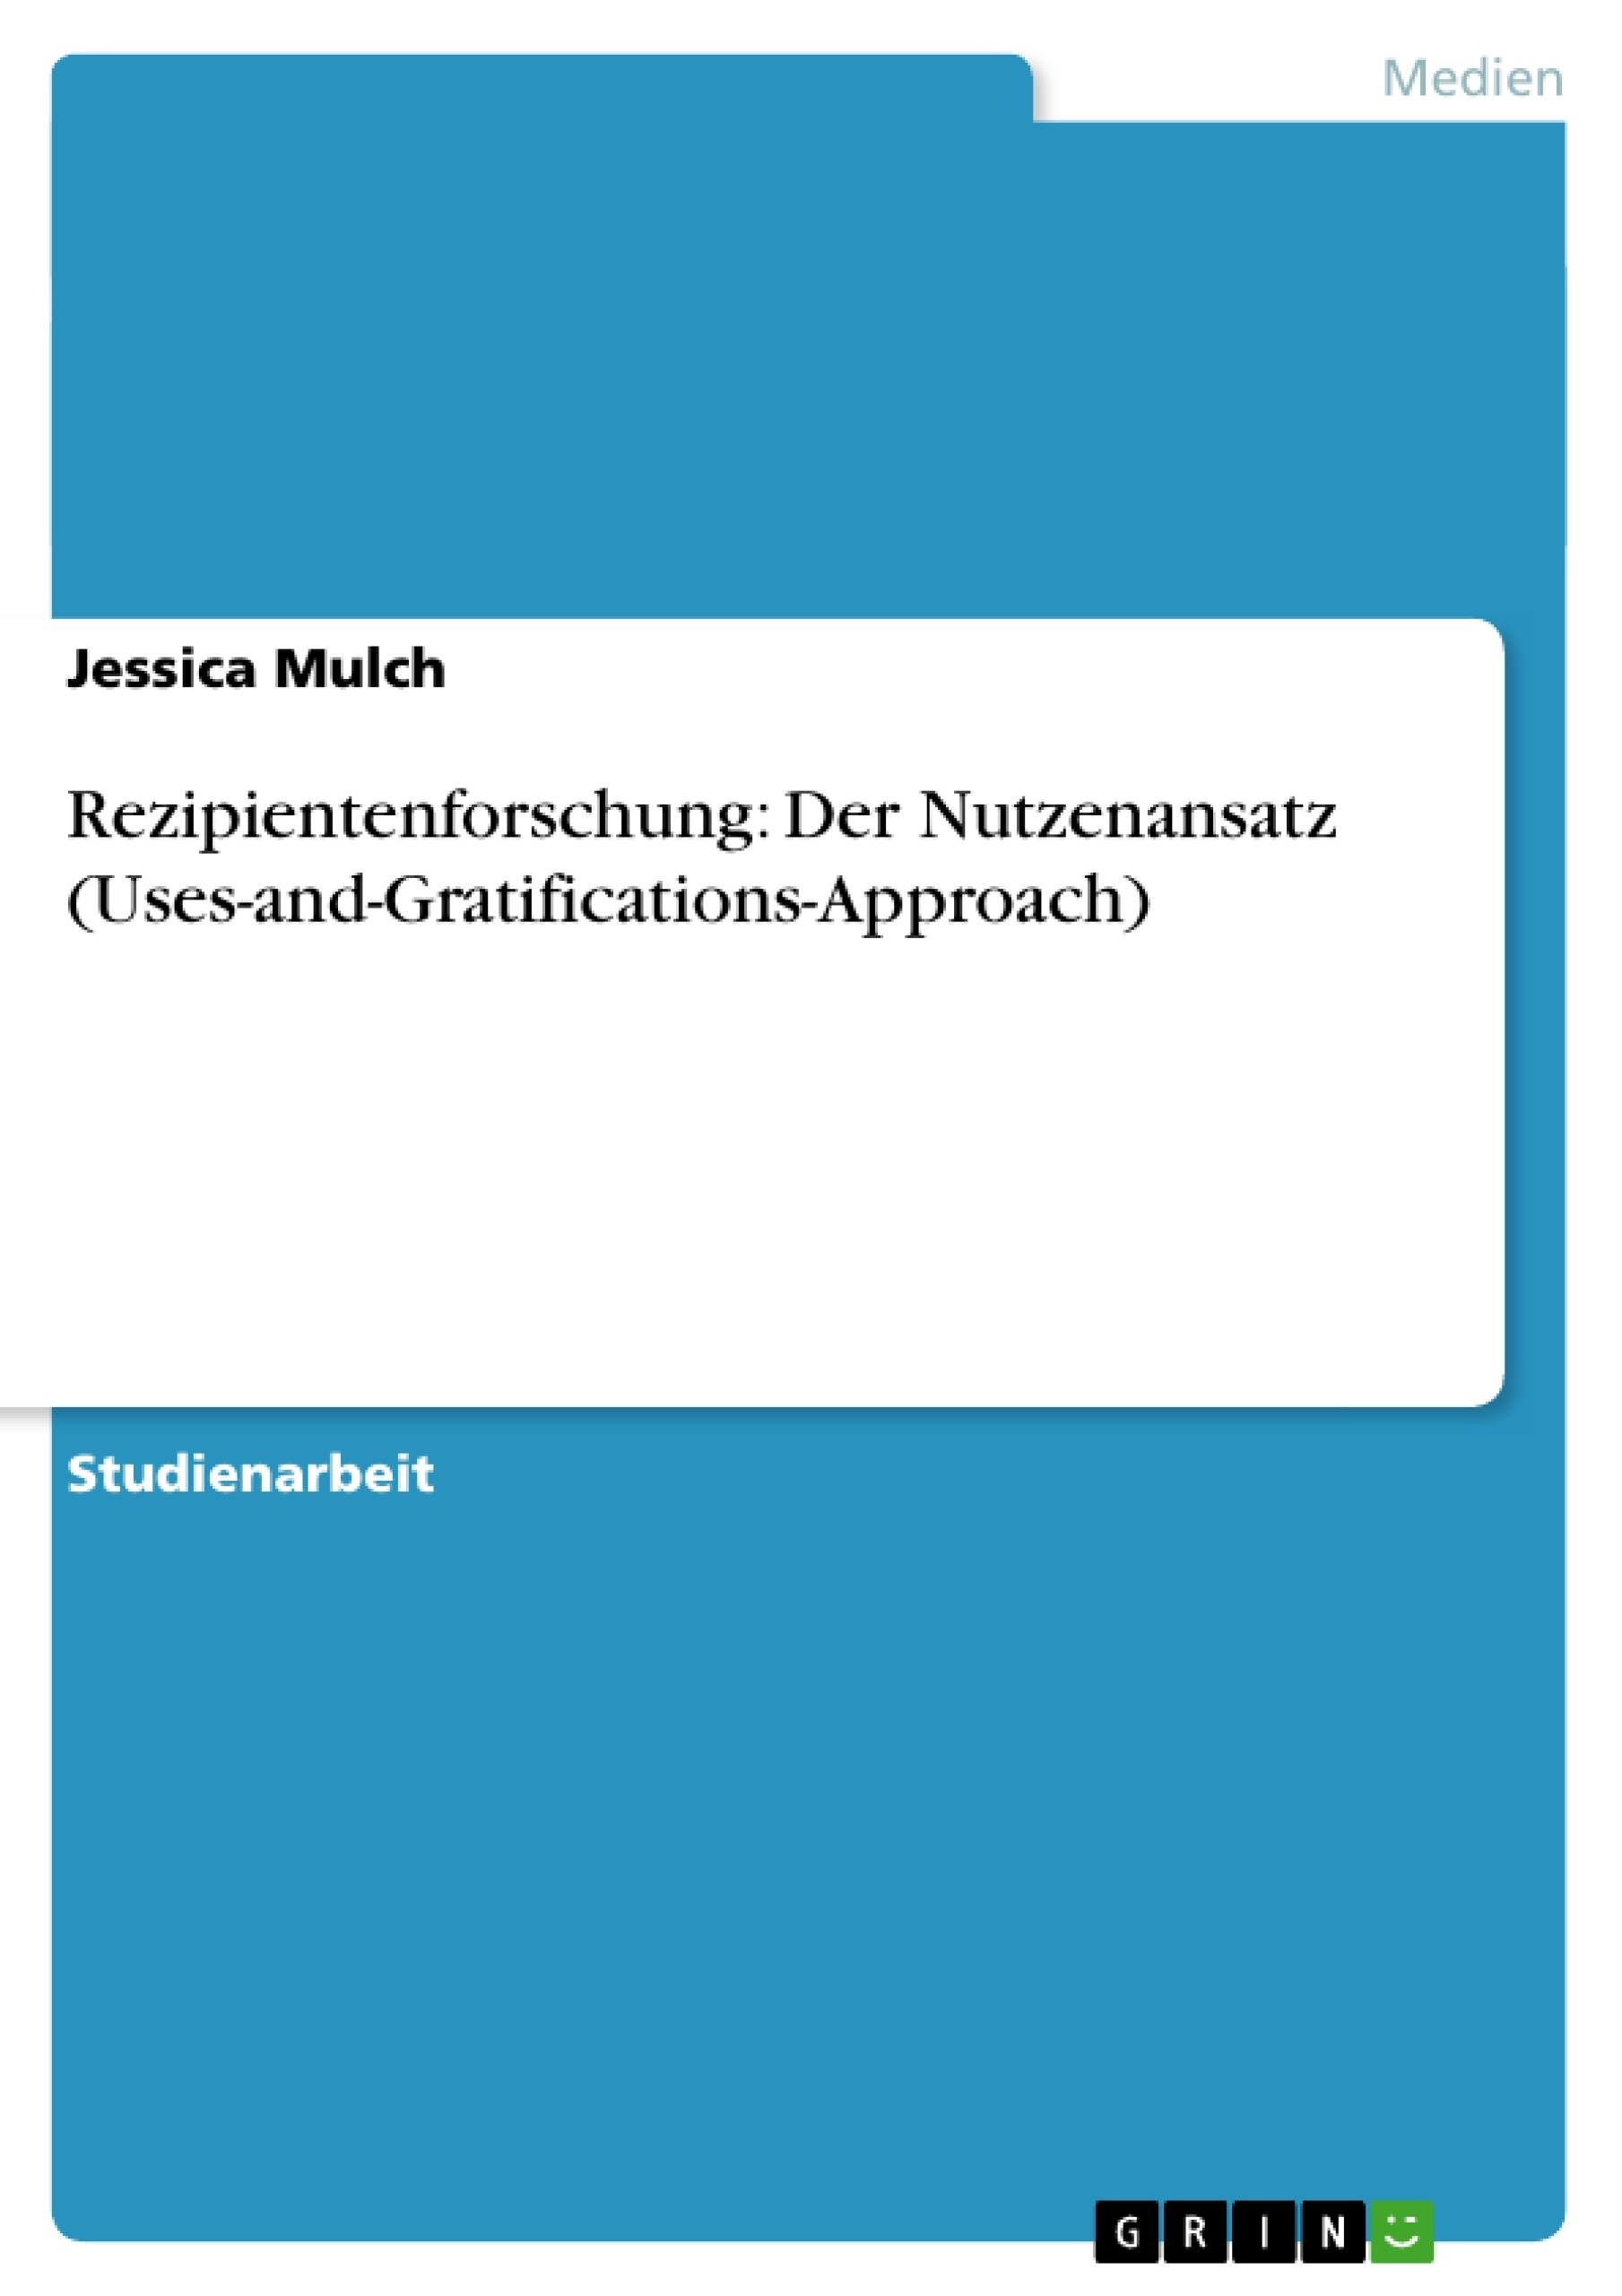 Título: Rezipientenforschung: Der Nutzenansatz (Uses-and-Gratifications-Approach)